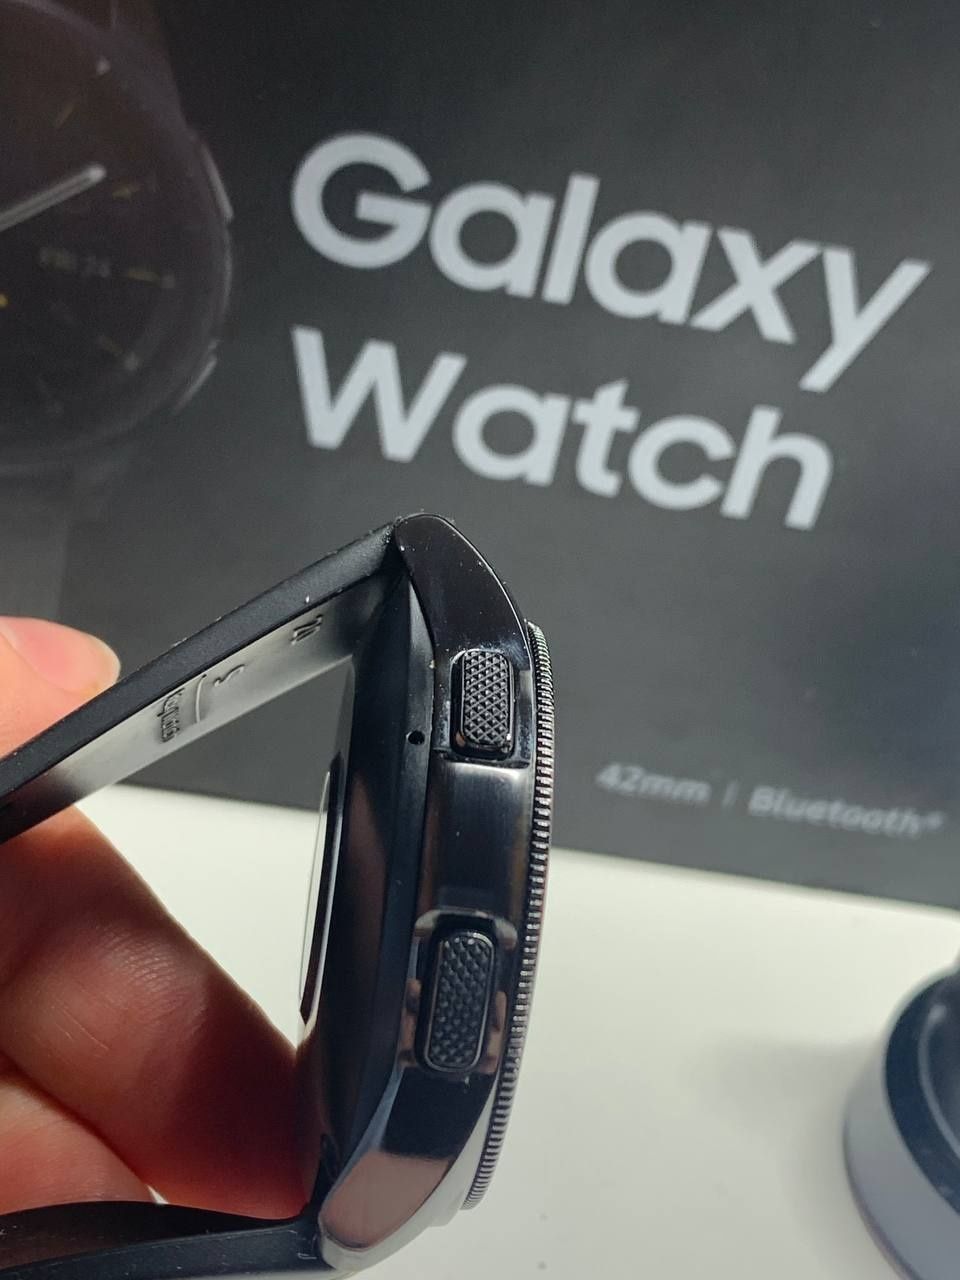 Galaxy watch 42mm